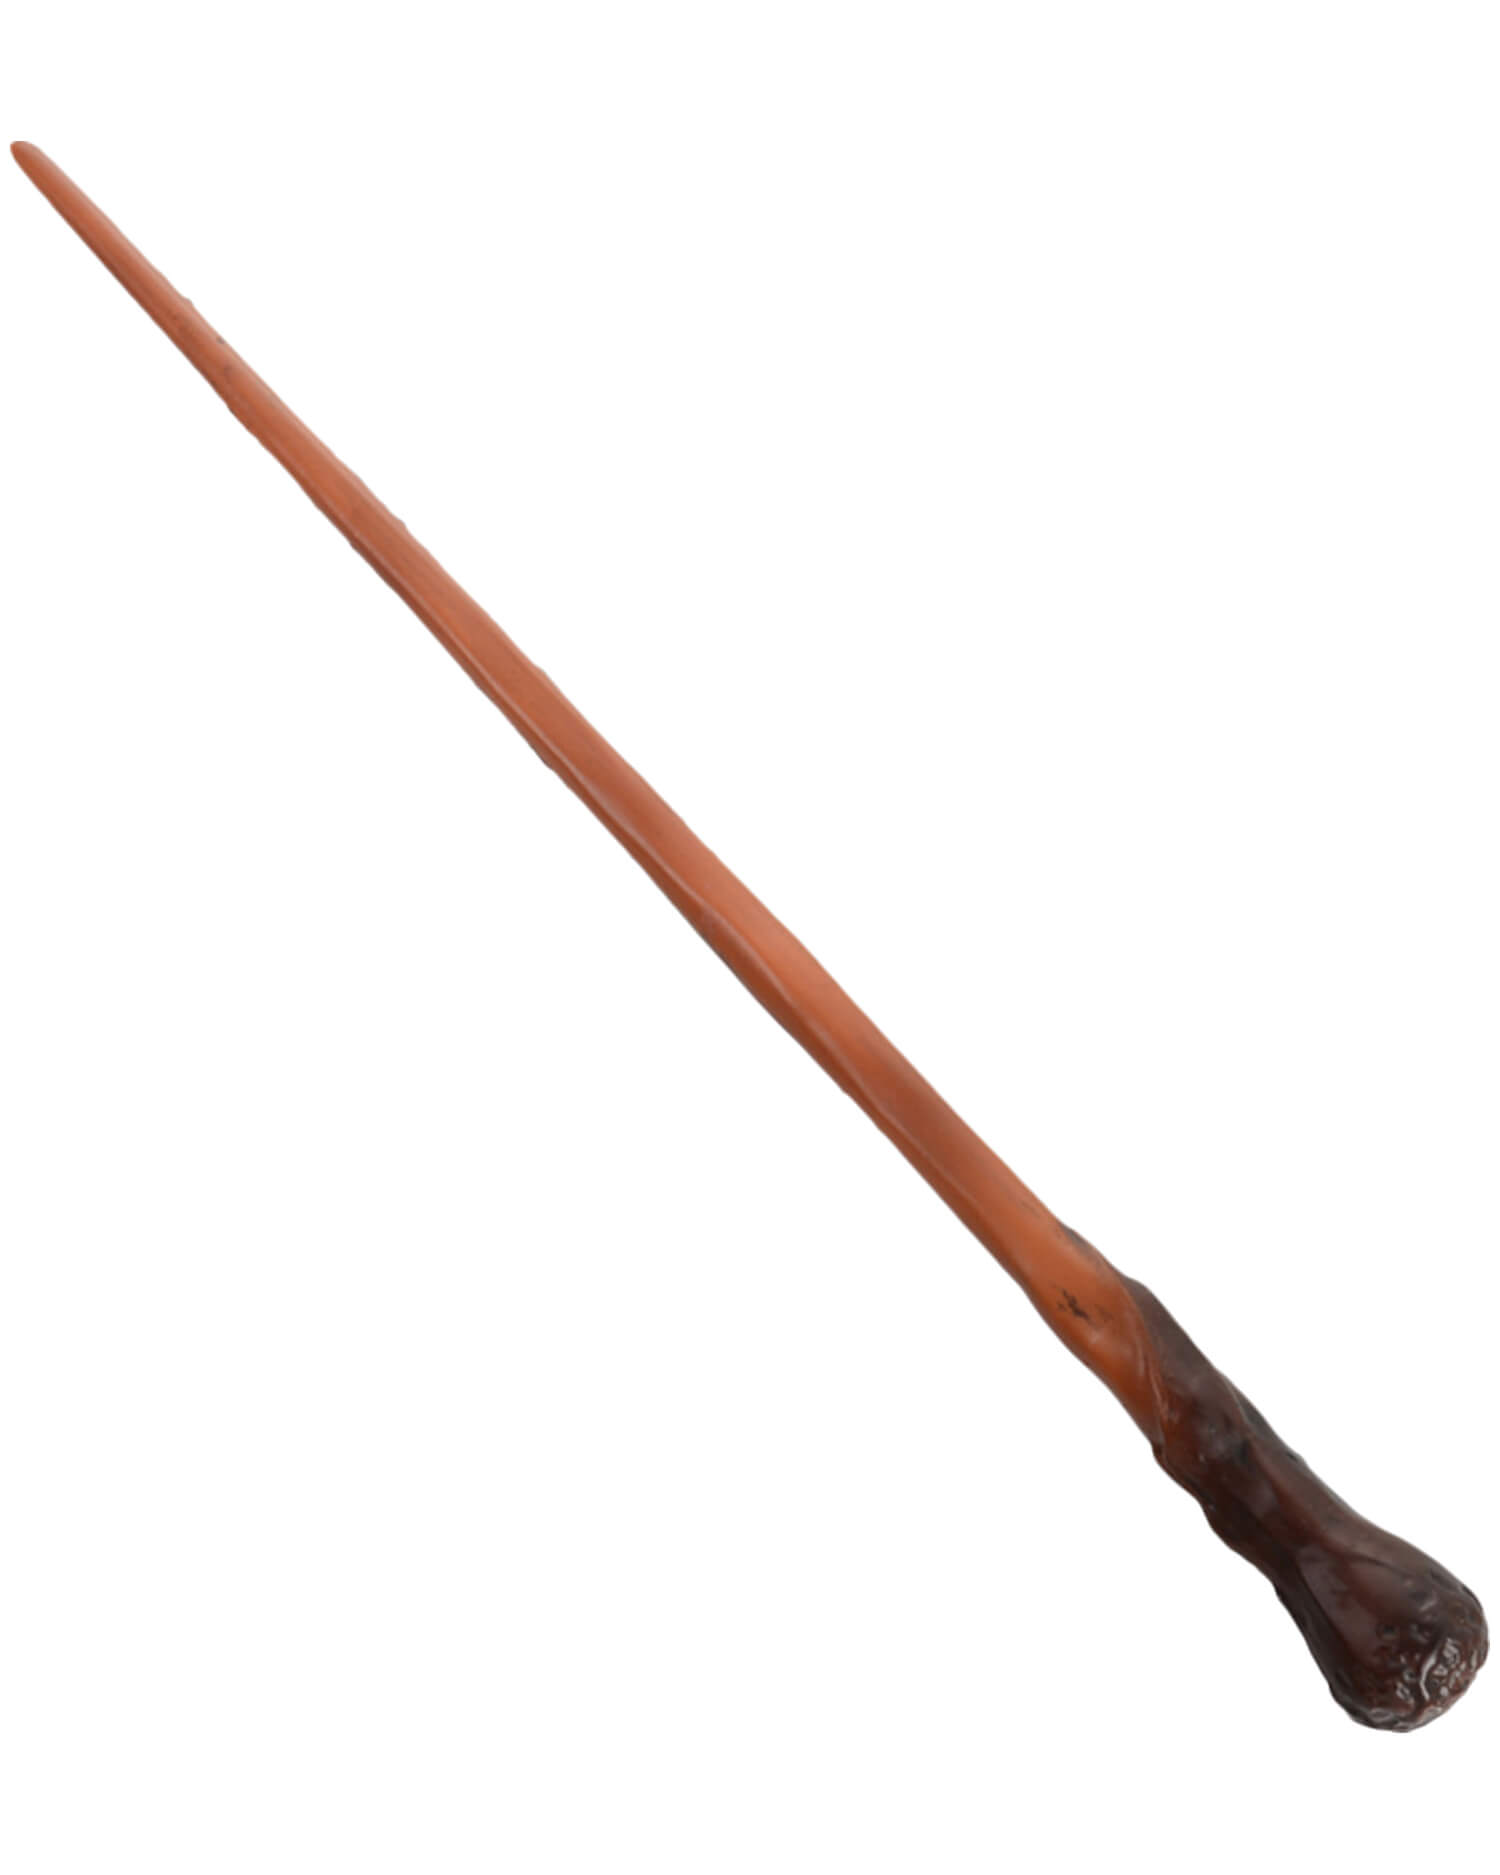 Nightoath magic wand